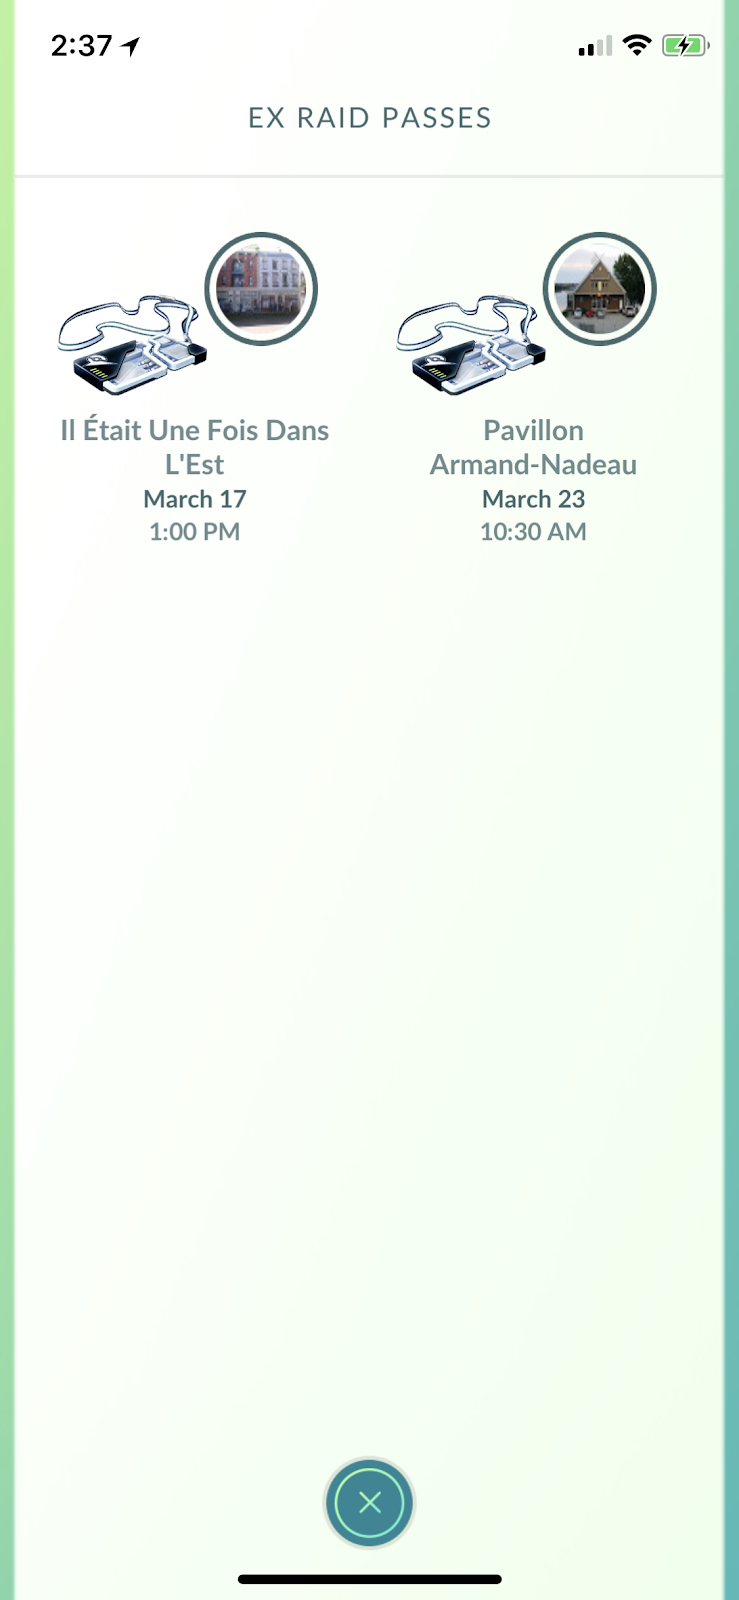 Pokémon Lendário Lugia retorna para as Batalhas de Reide no Pokémon GO